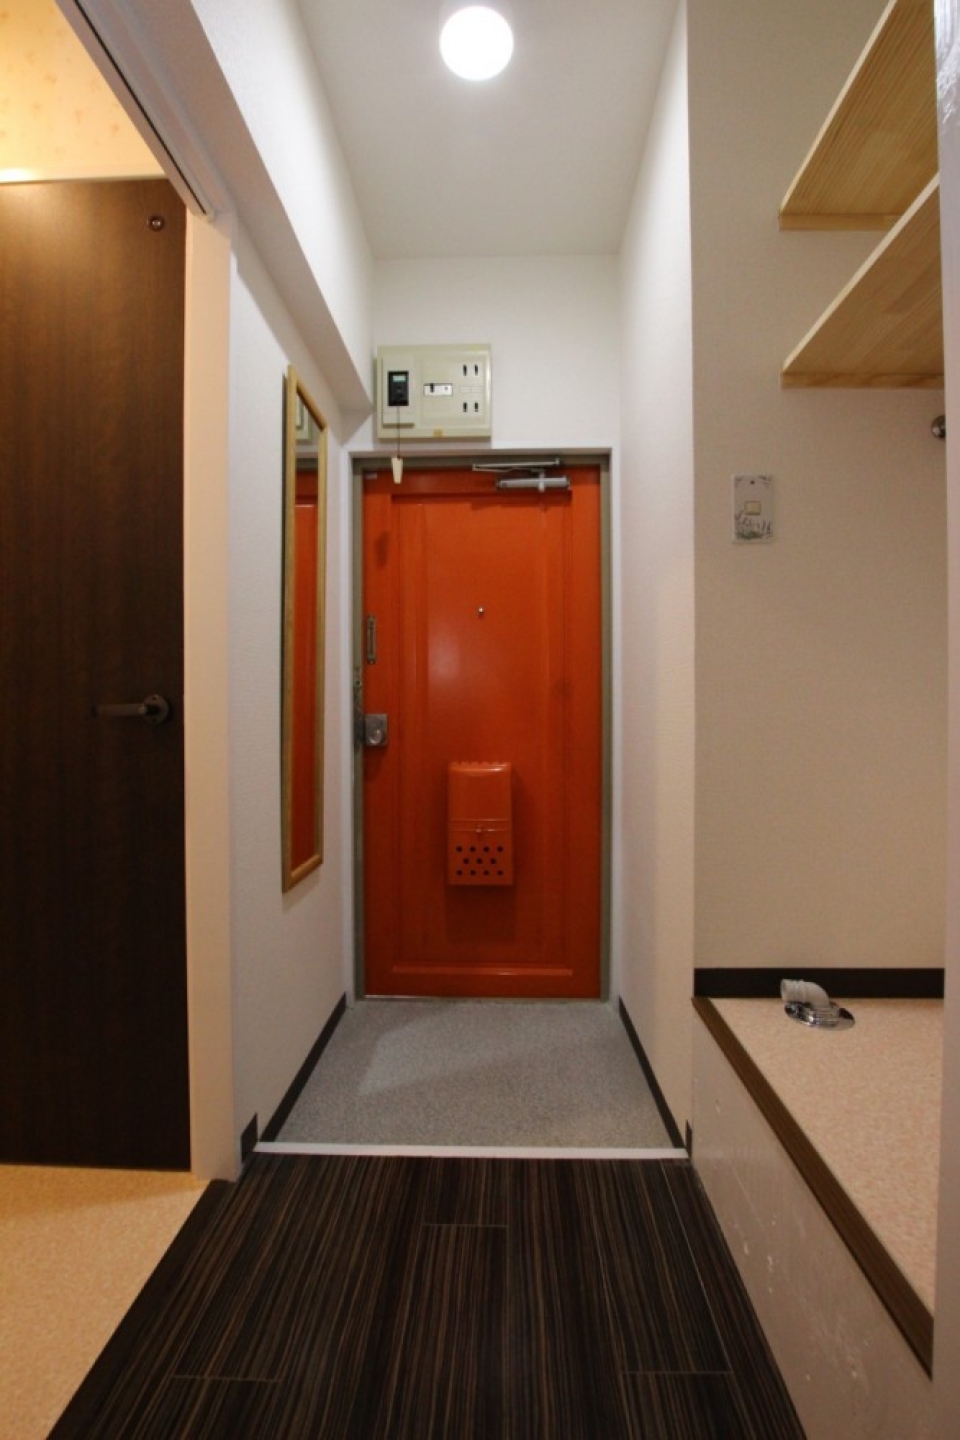 ドアの内側はオレンジで塗装されていて出かける際に元気になりそう。